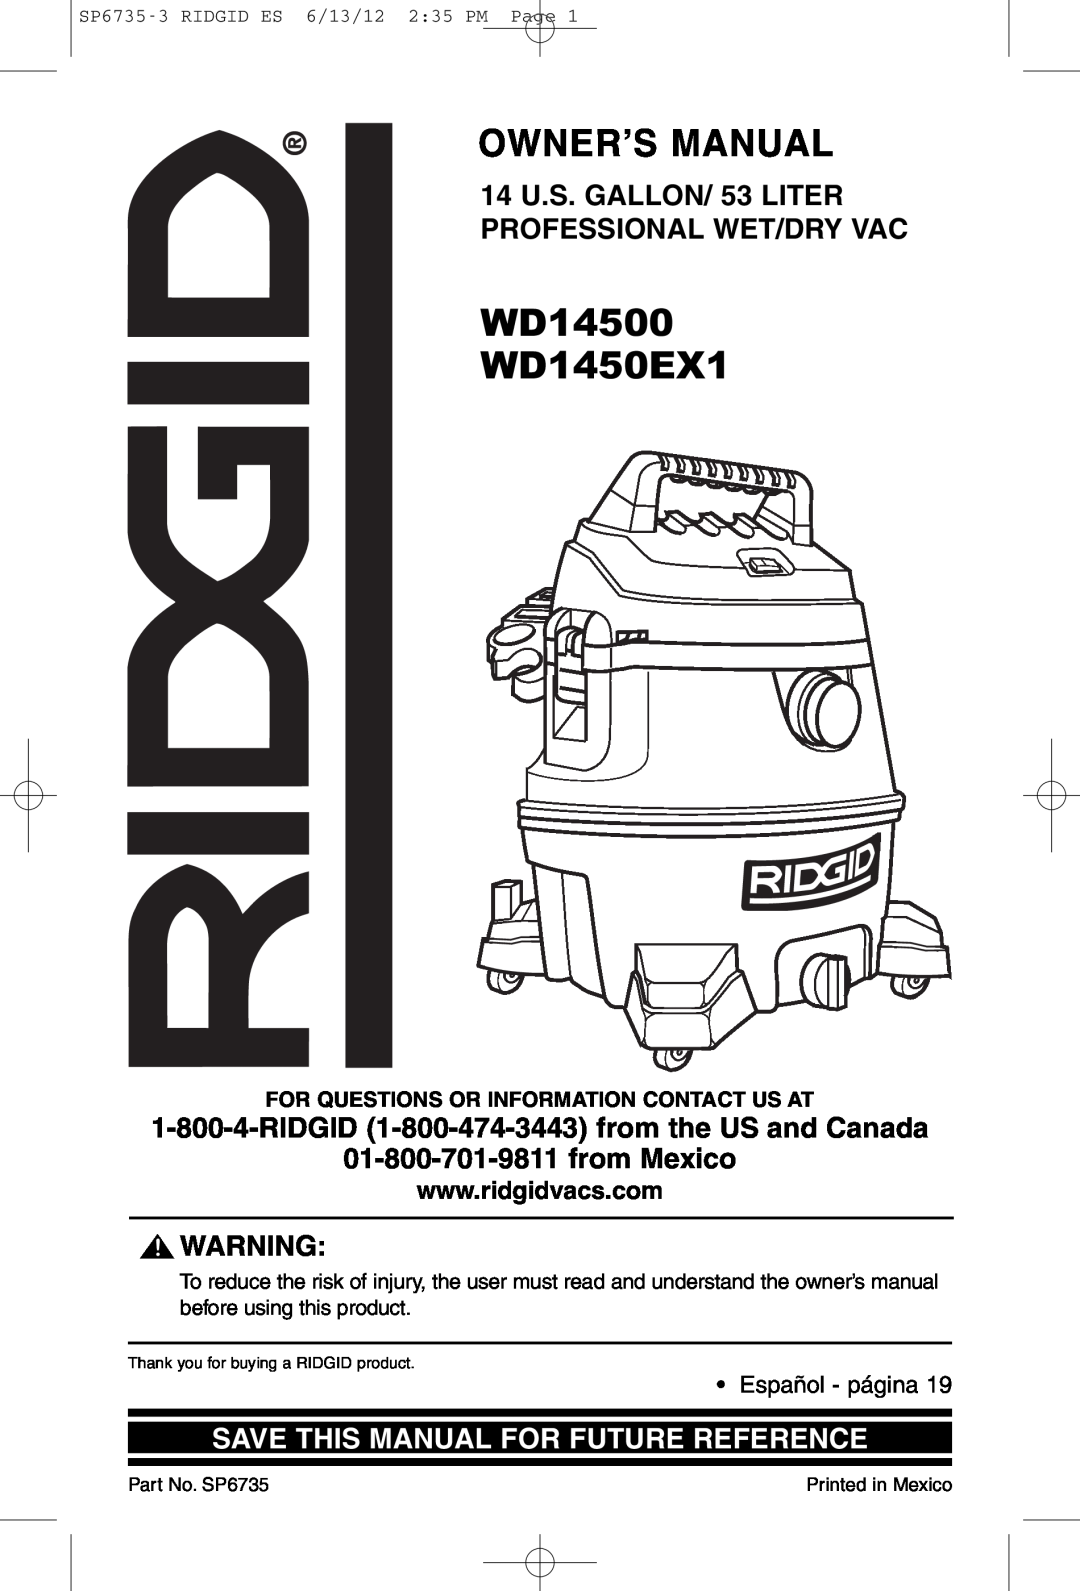 RIDGID owner manual WD14500 WD1450EX1, 14 U.S. GALLON/ 53 LITER PROFESSIONAL WET/DRY VAC, Español - página 